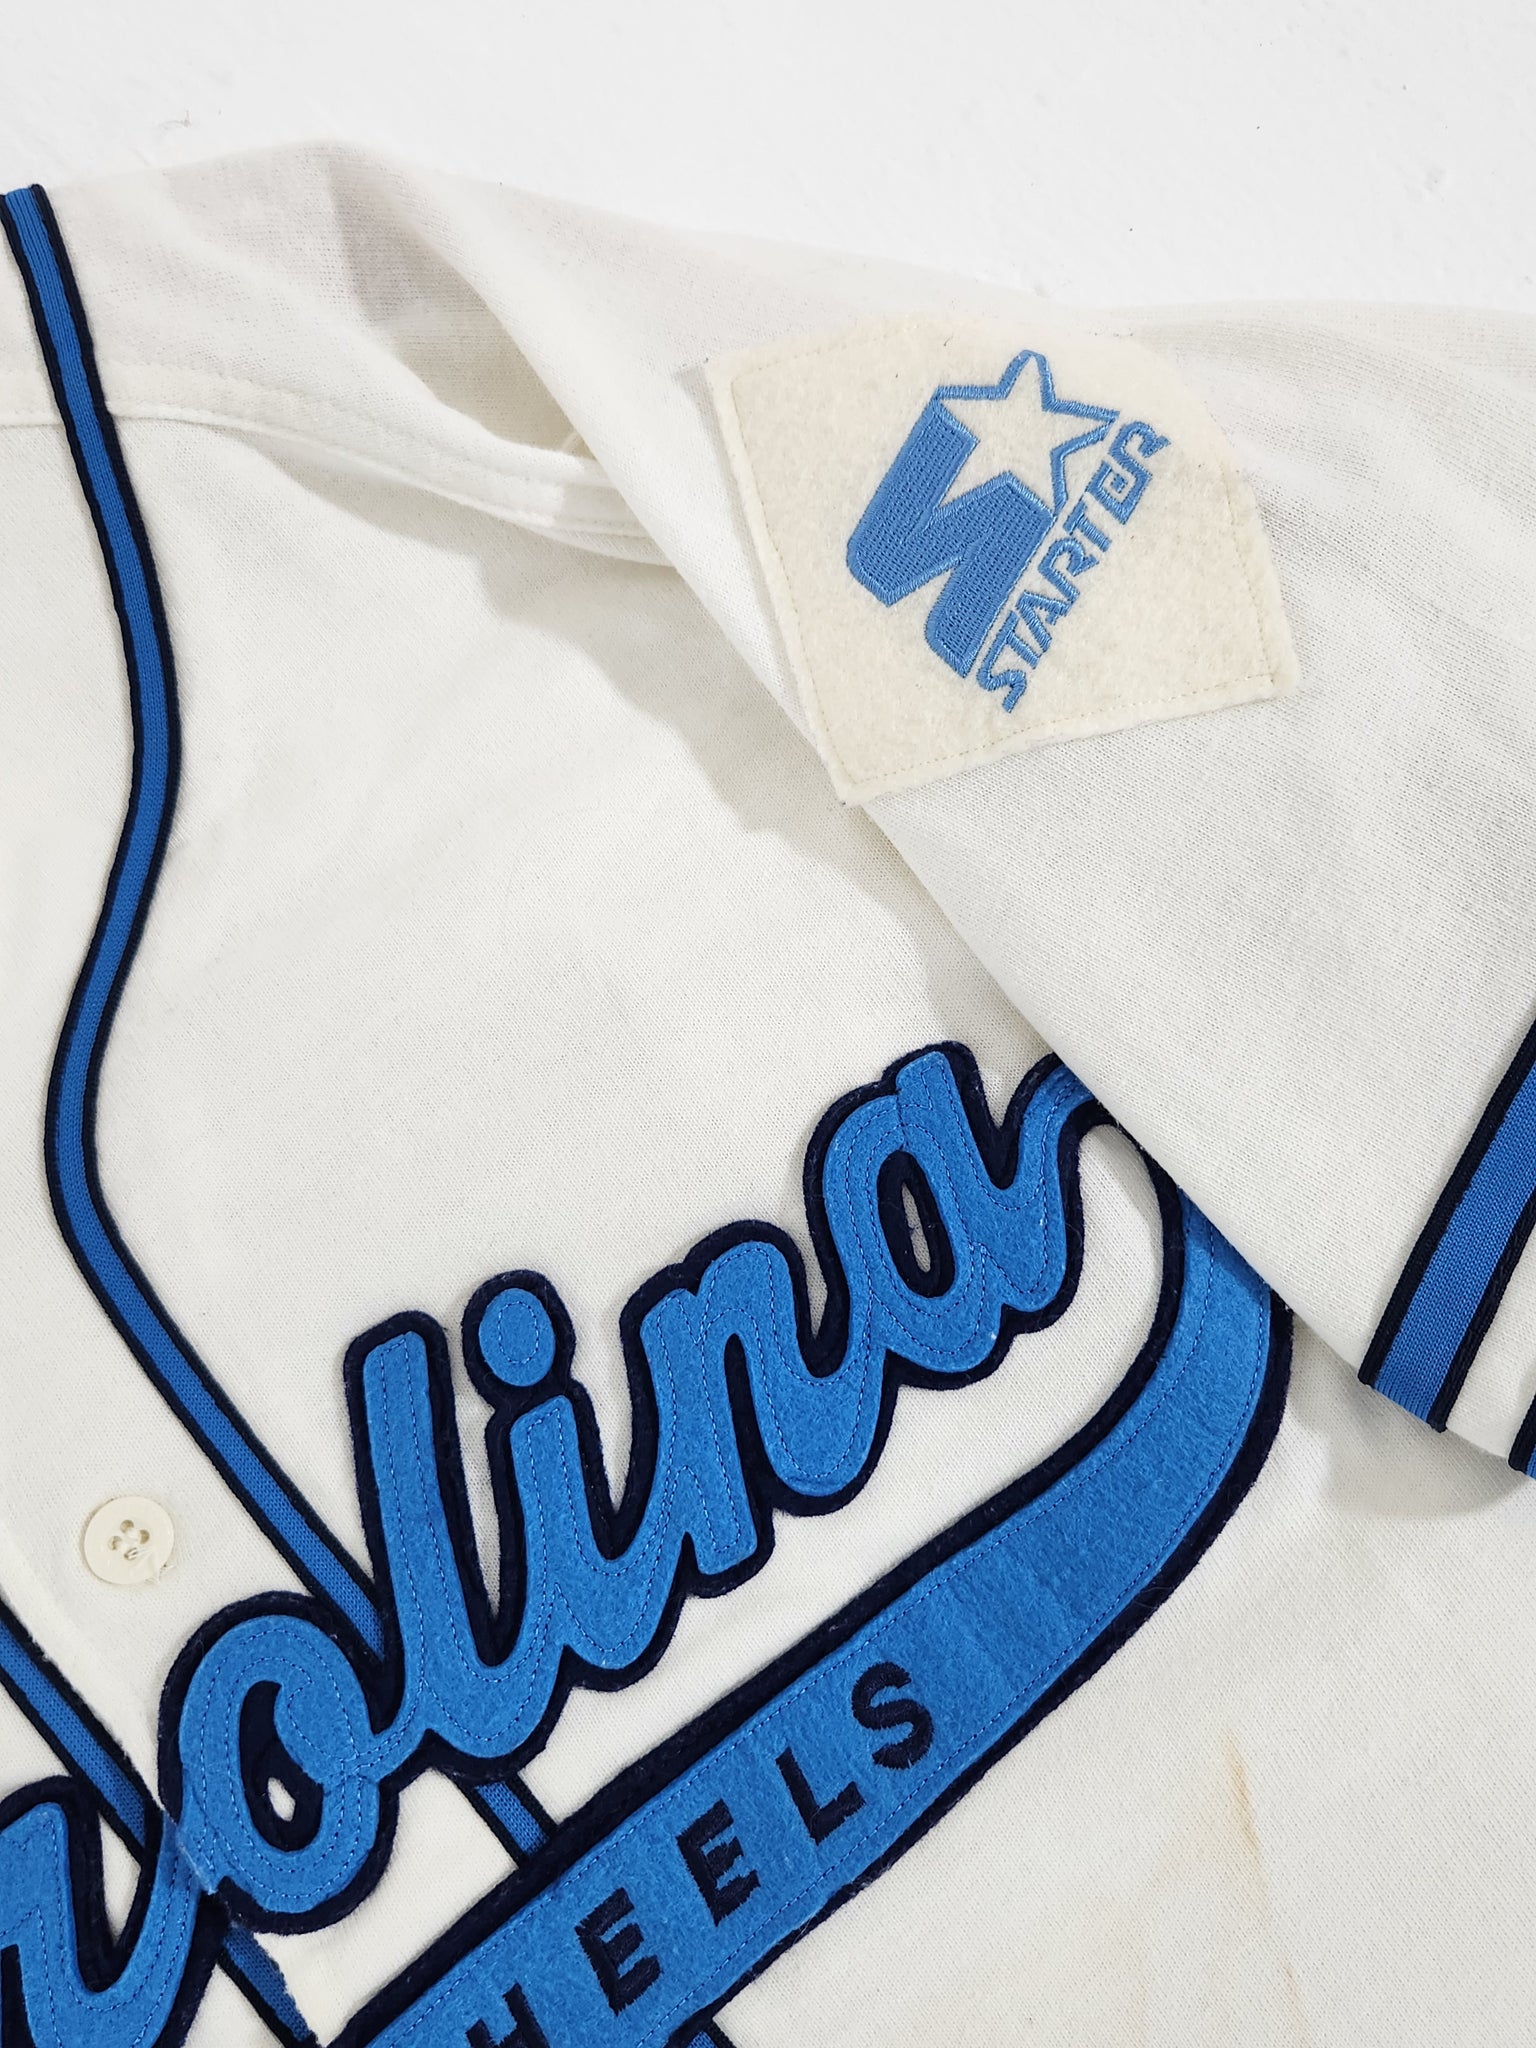 Vintage Starter UNC North Carolina Tar Heels Baseball Jersey L Navy Blue  Sewn